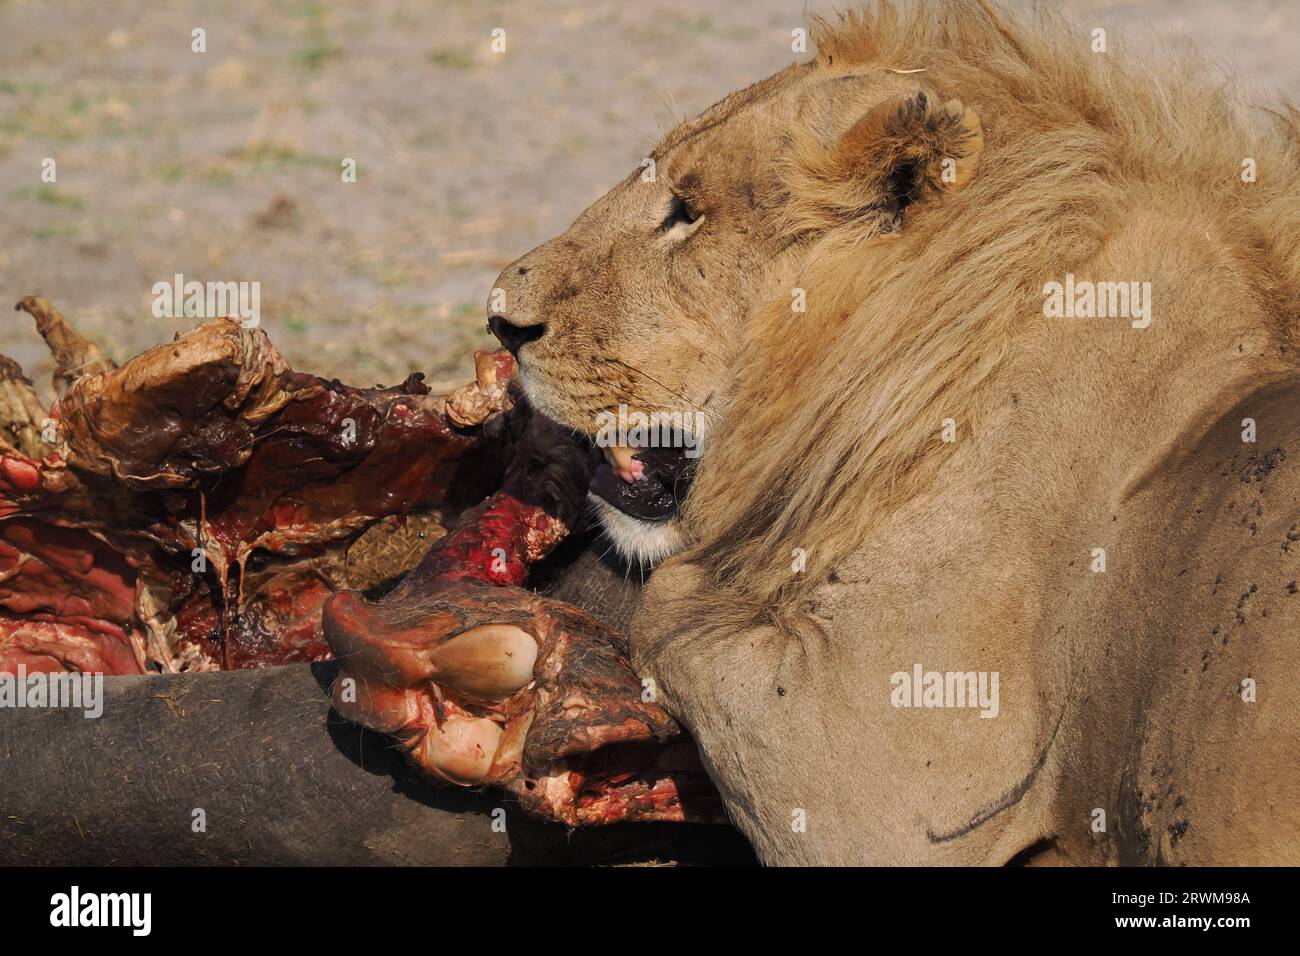 Questo grande orgoglio di leoni aveva ucciso un ippopotamo nella notte. La maggior parte dell'orgoglio aveva mangiato, ma alcuni ancora si godevano. Foto Stock